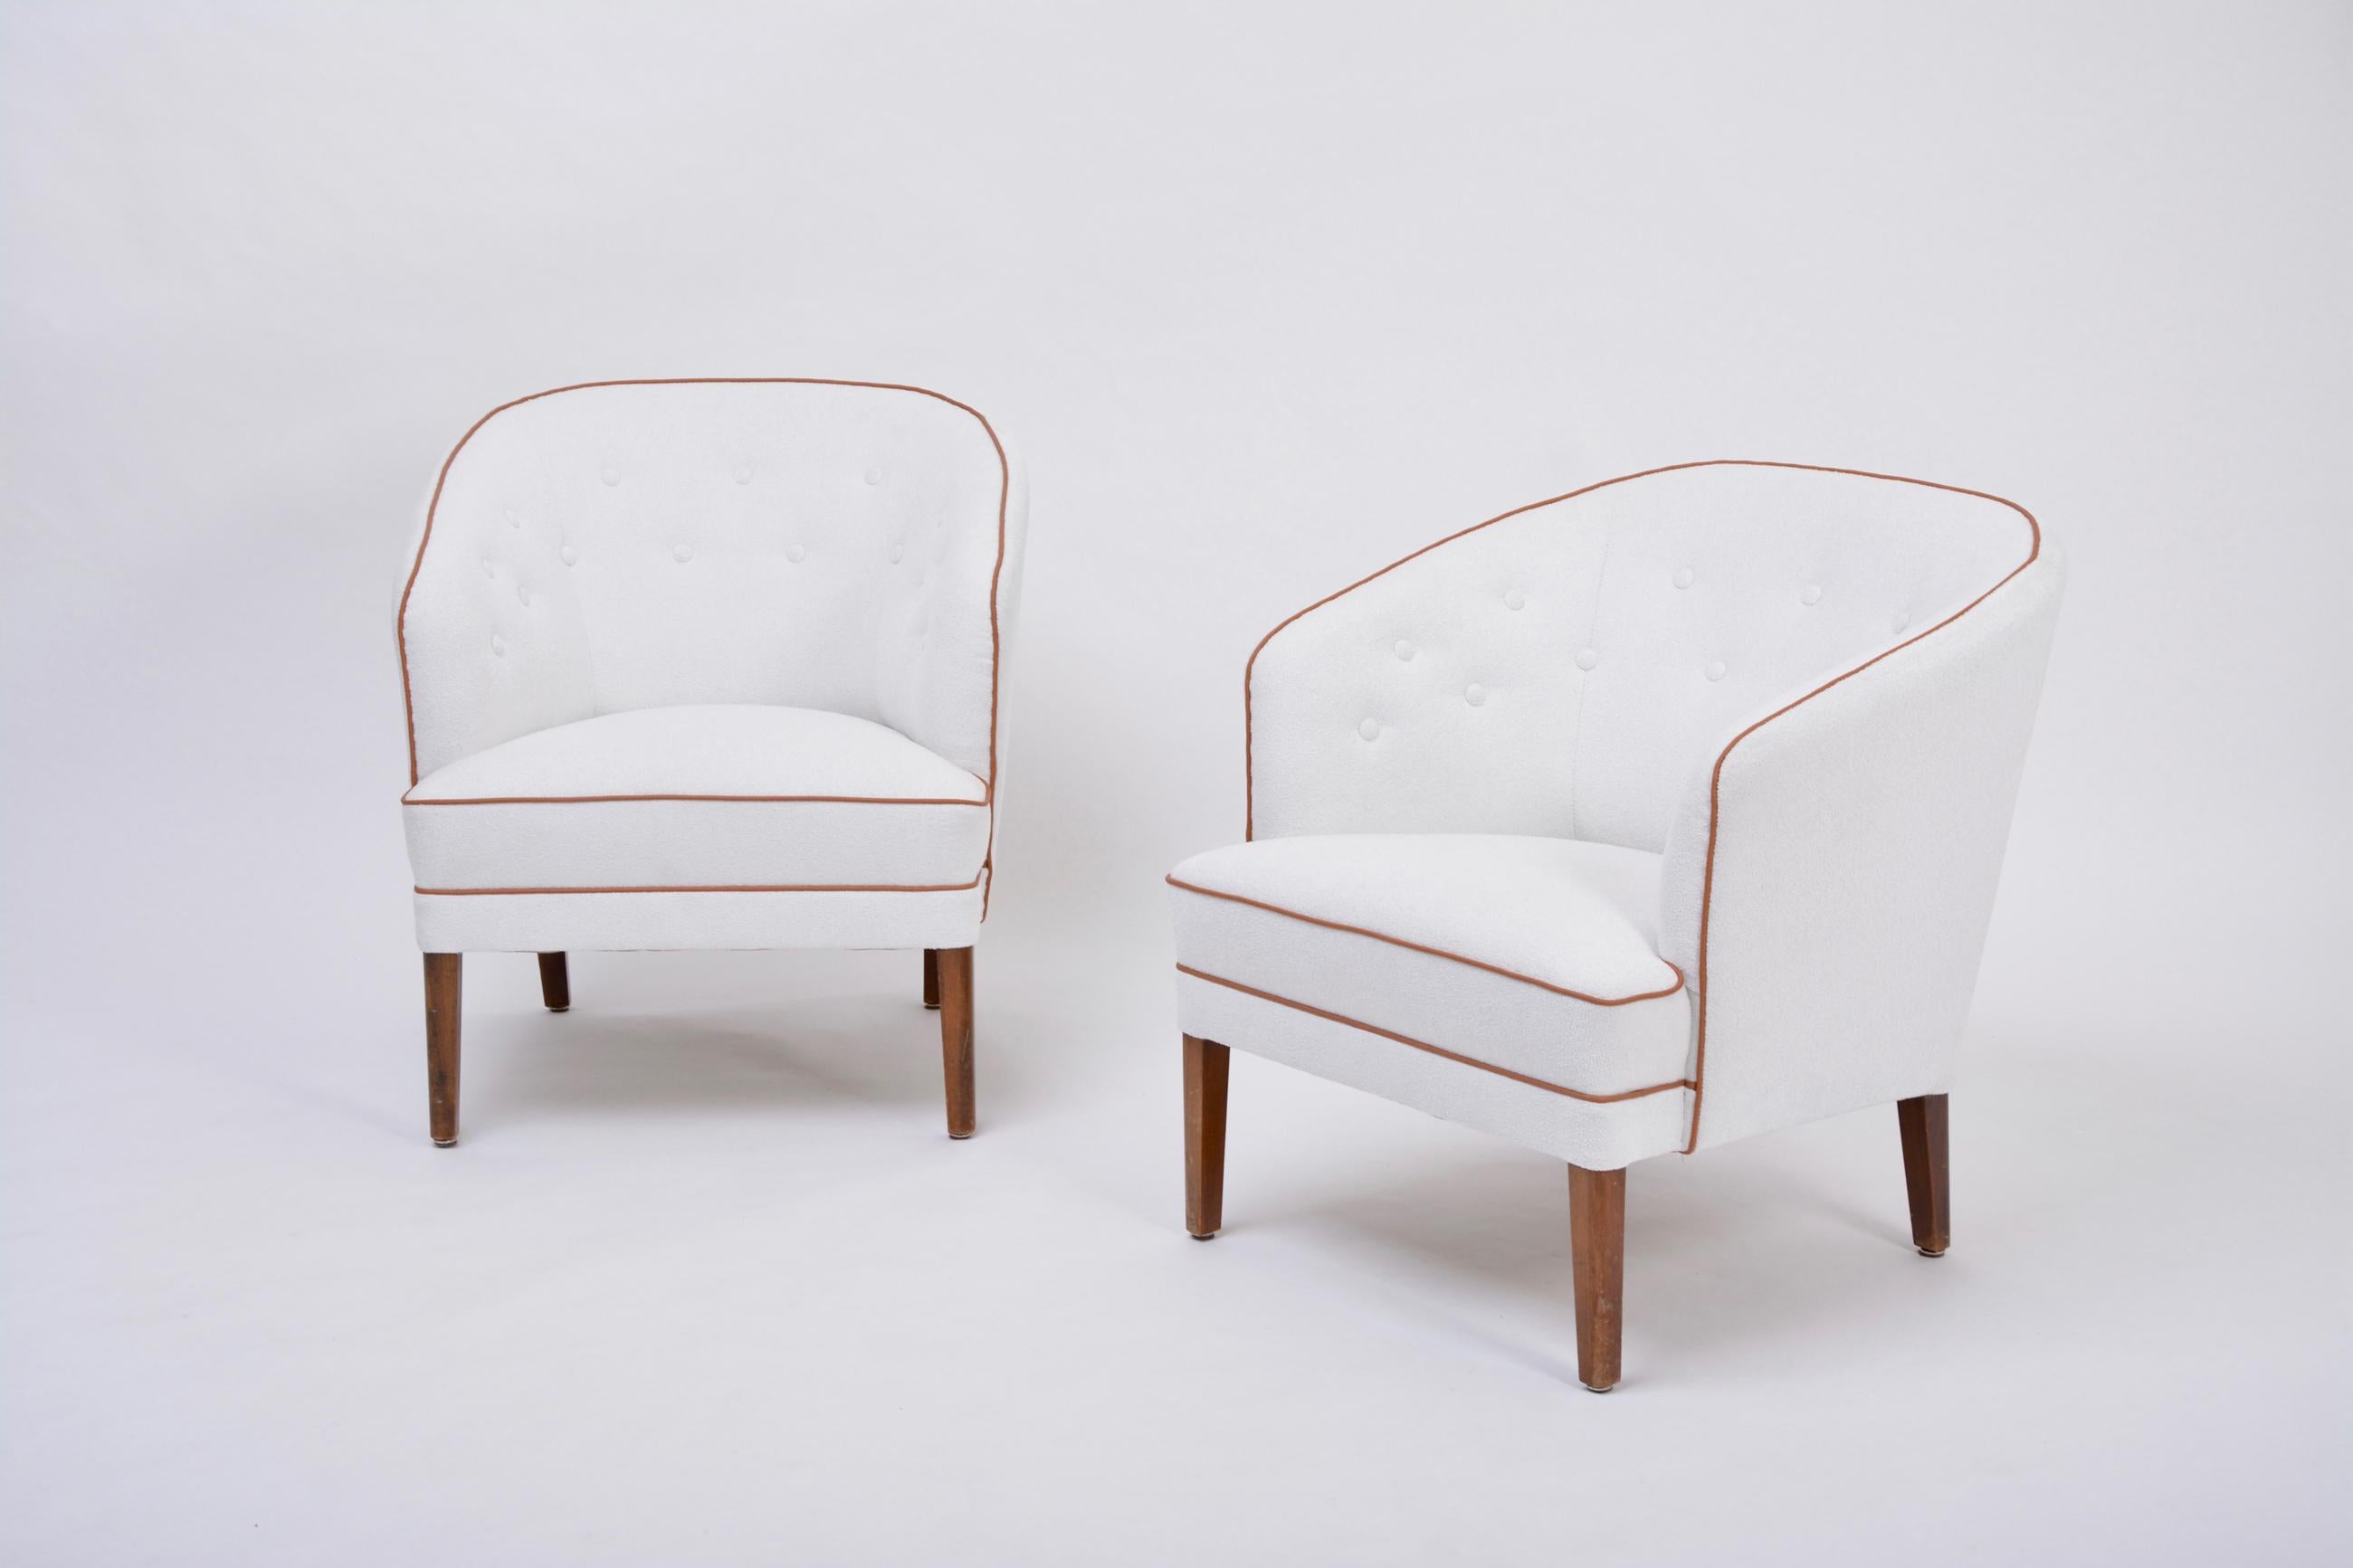 Ein Paar weiß gepolsterte dänische Sessel aus der Mitte des Jahrhunderts von Ludvig Pontoppidan

Sehr seltener Satz von zwei Sesseln mit eleganten Kurven, entworfen und hergestellt vom dänischen Meister Ludvig Pontoppidan. Die Stühle sind in